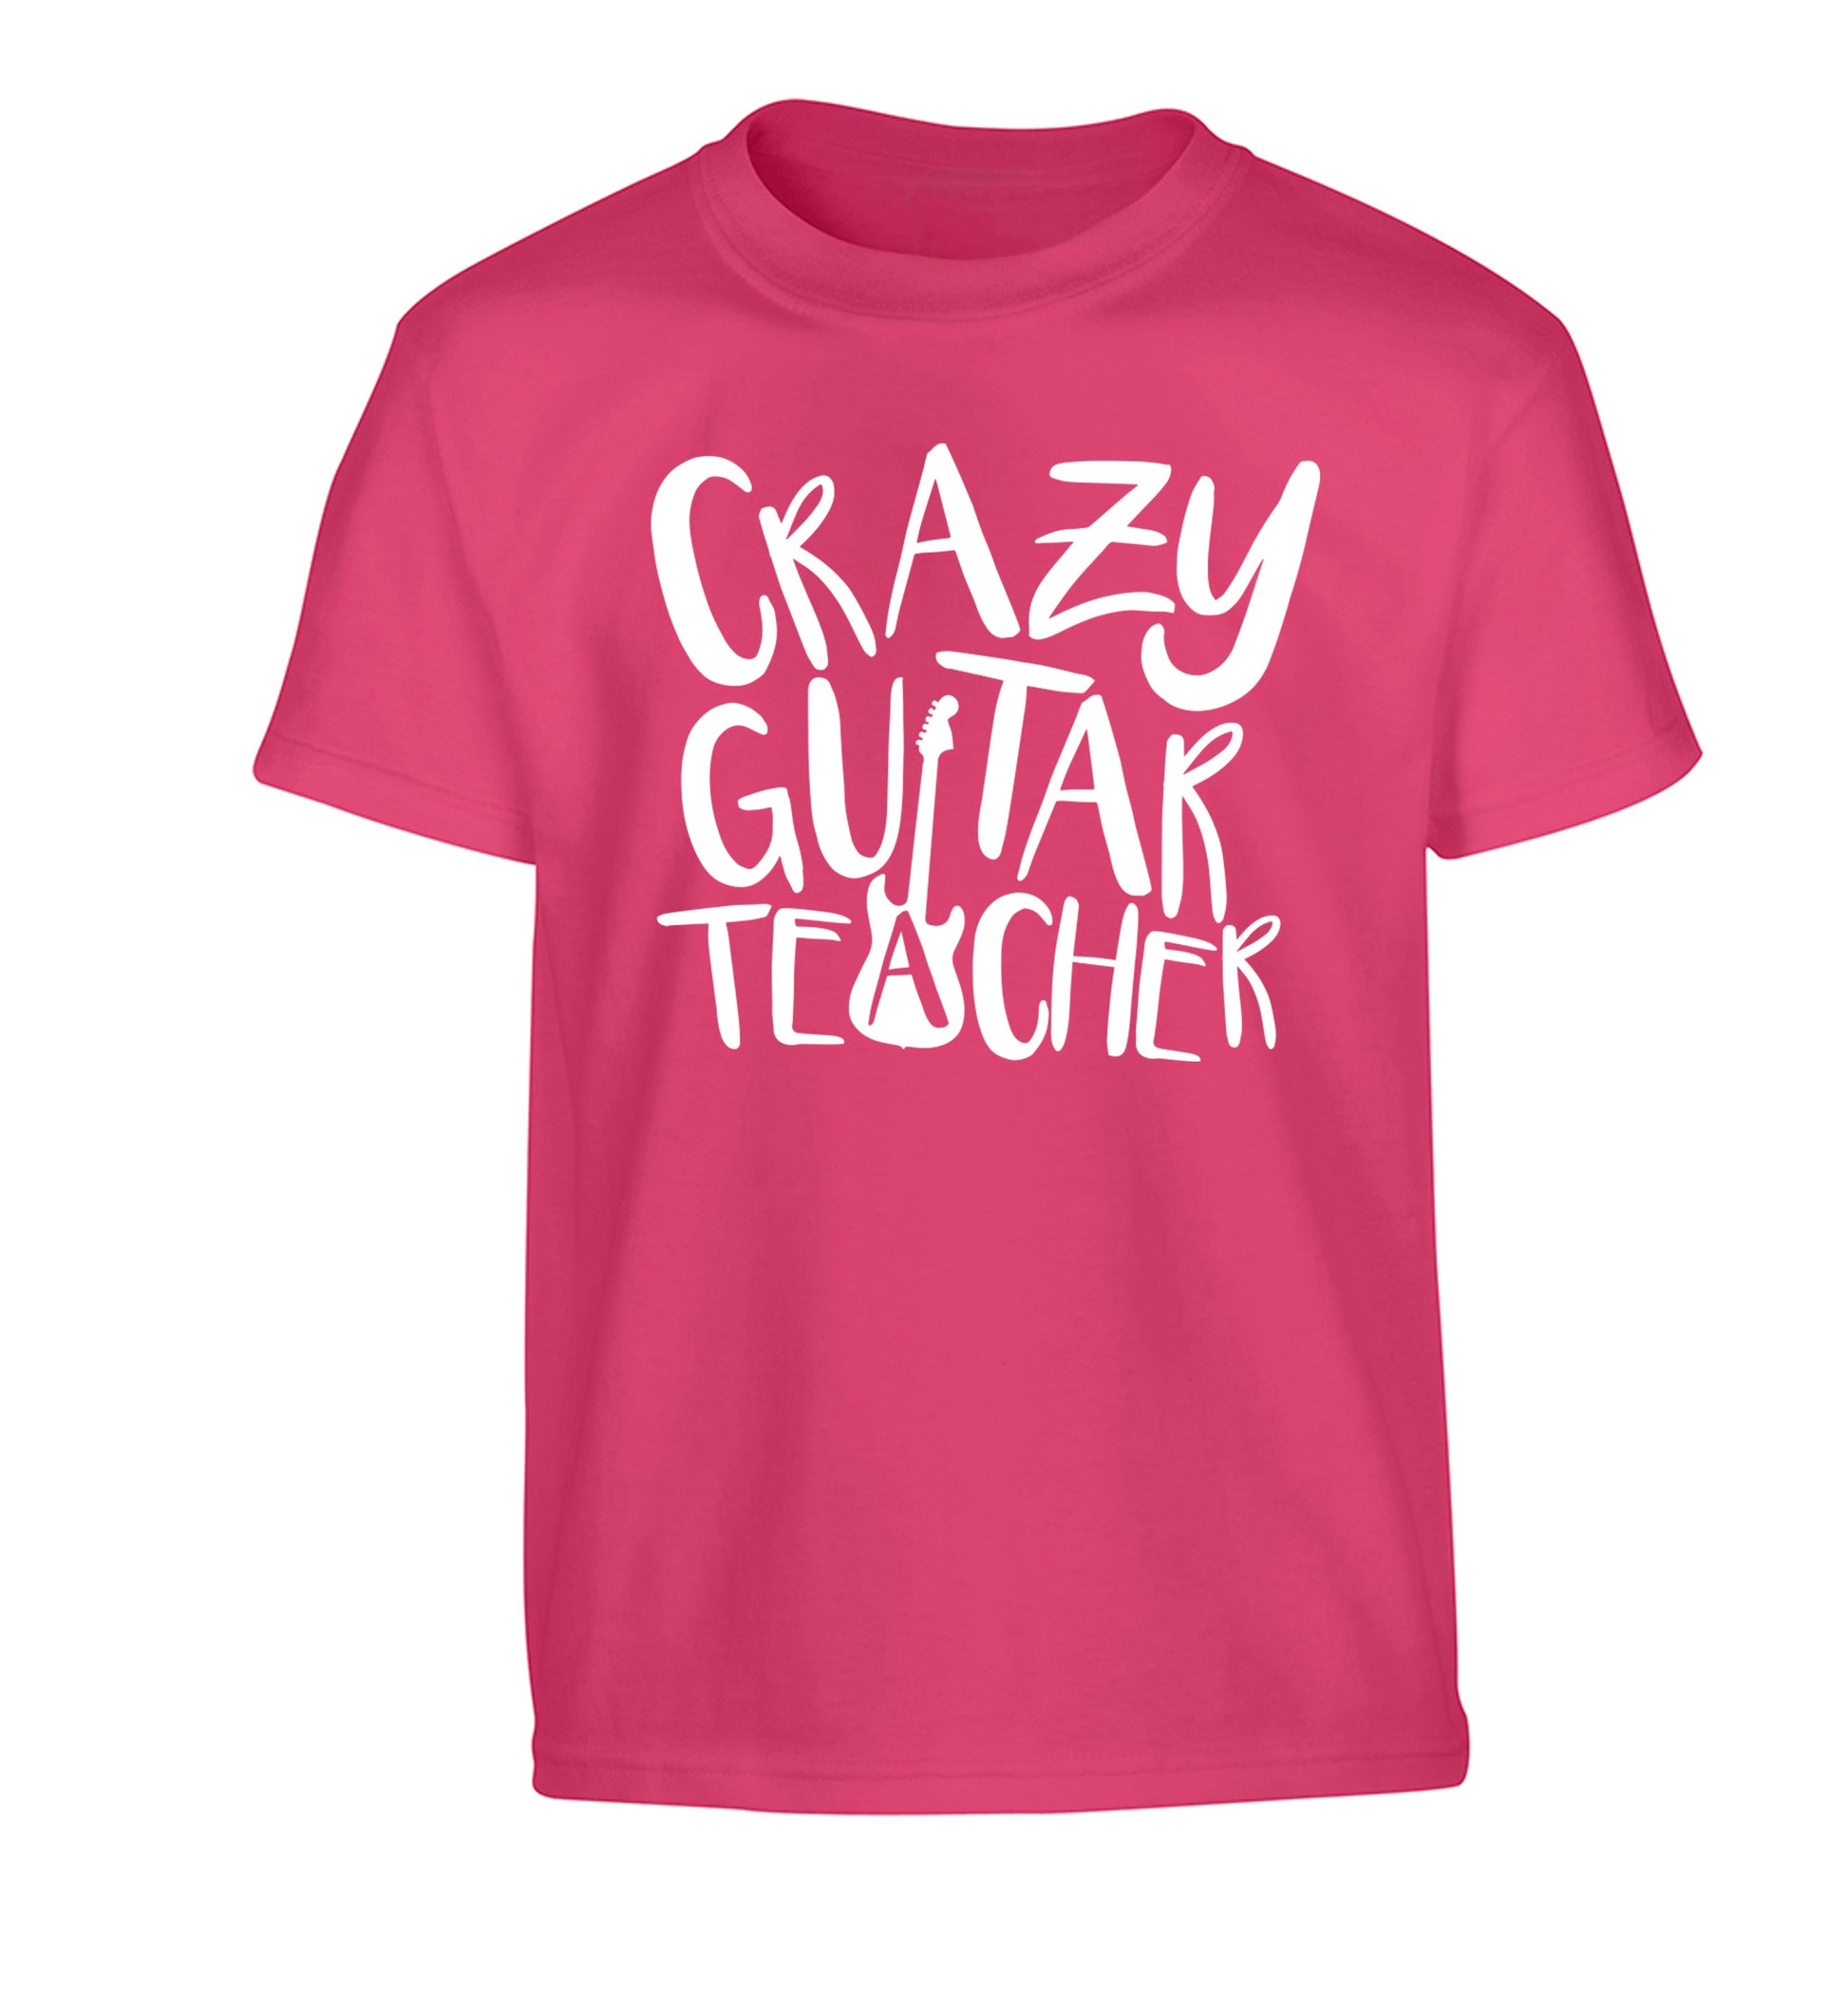 Crazy guitar teacher Children's pink Tshirt 12-13 Years